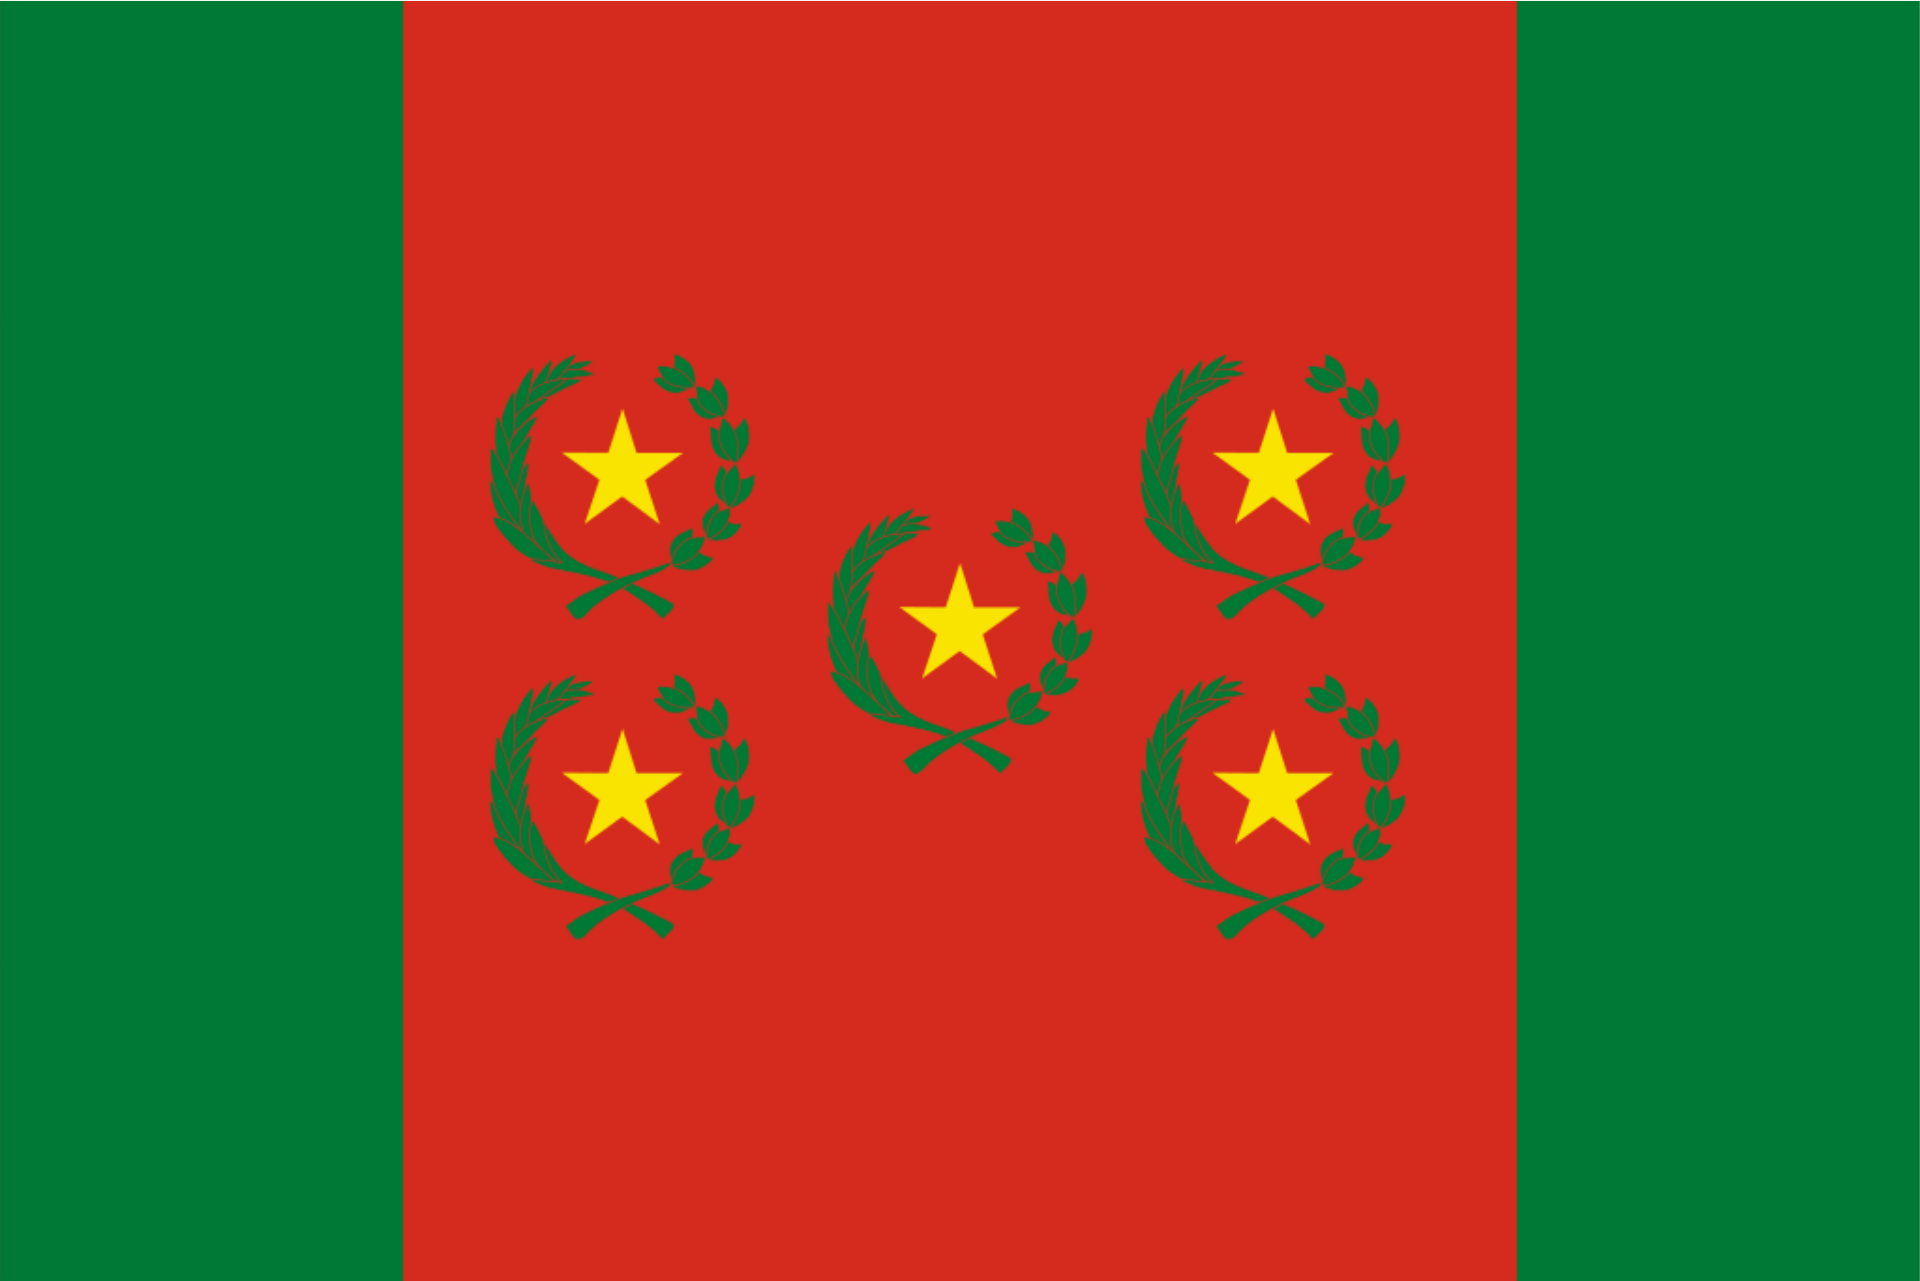 Bandera del Bolivia